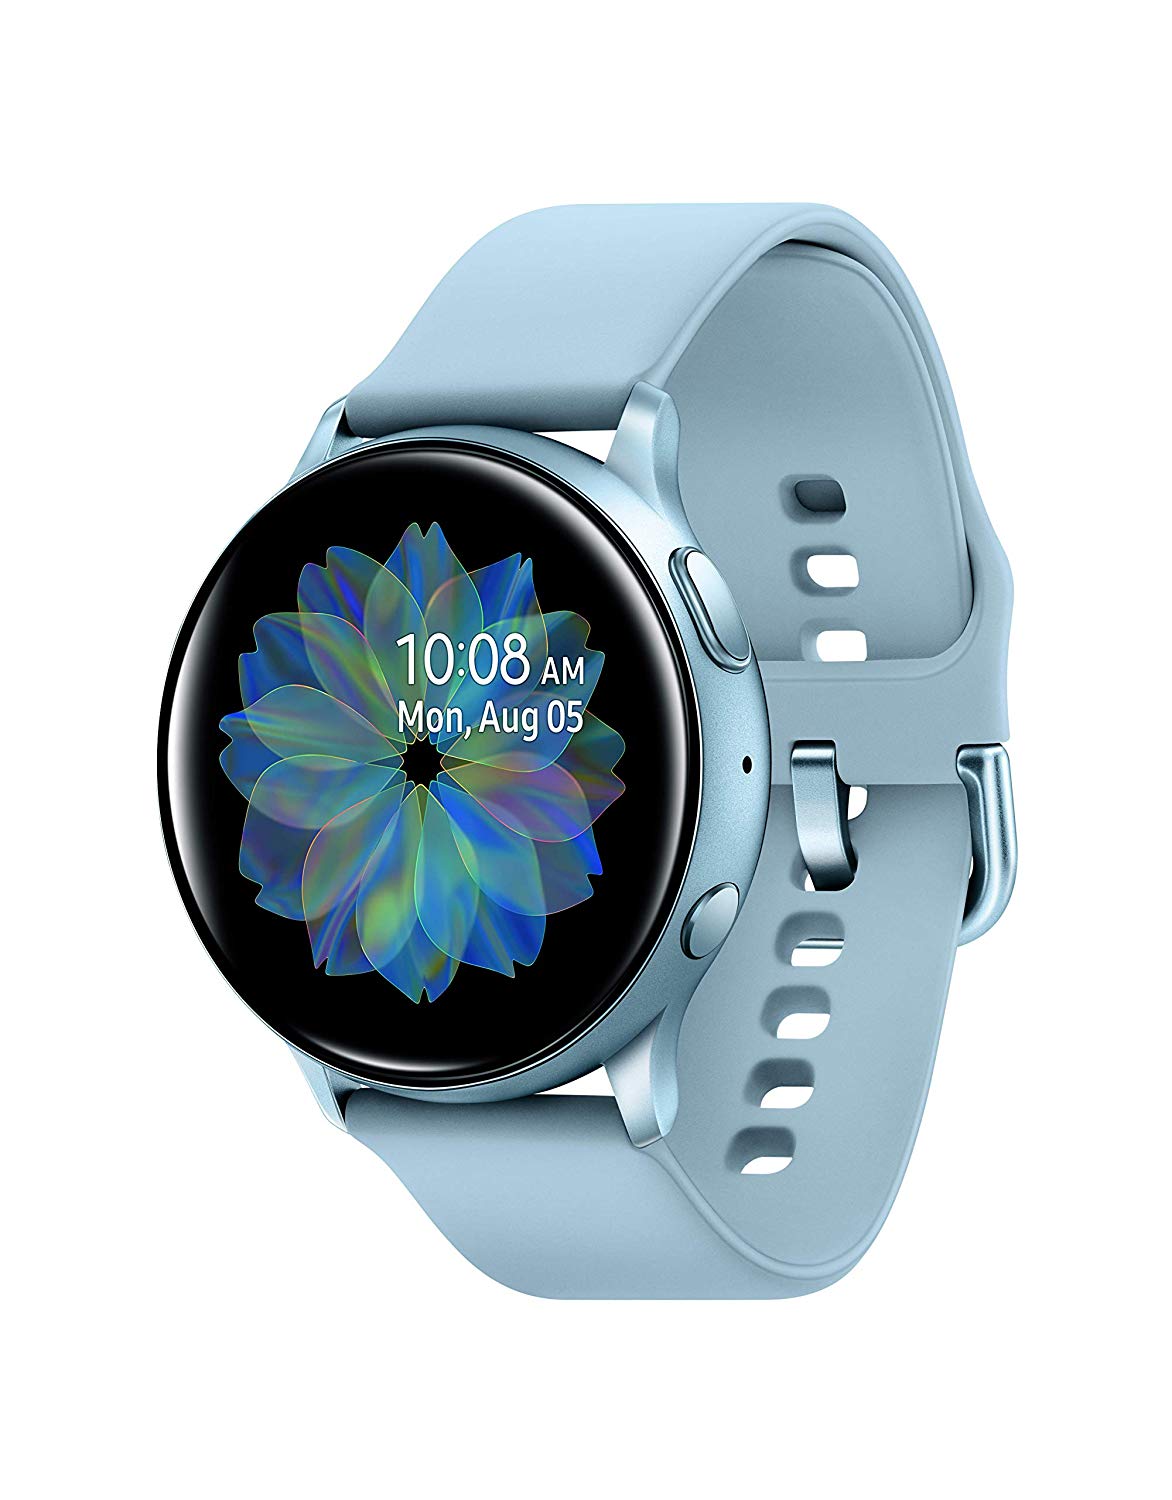 SAMSUNG SM-R805UZSAXAR Galaxy Watch Smartwatch 46mm Stainless Steel LTE GSM  (Unlocked), Phone, Silver (Renewed)